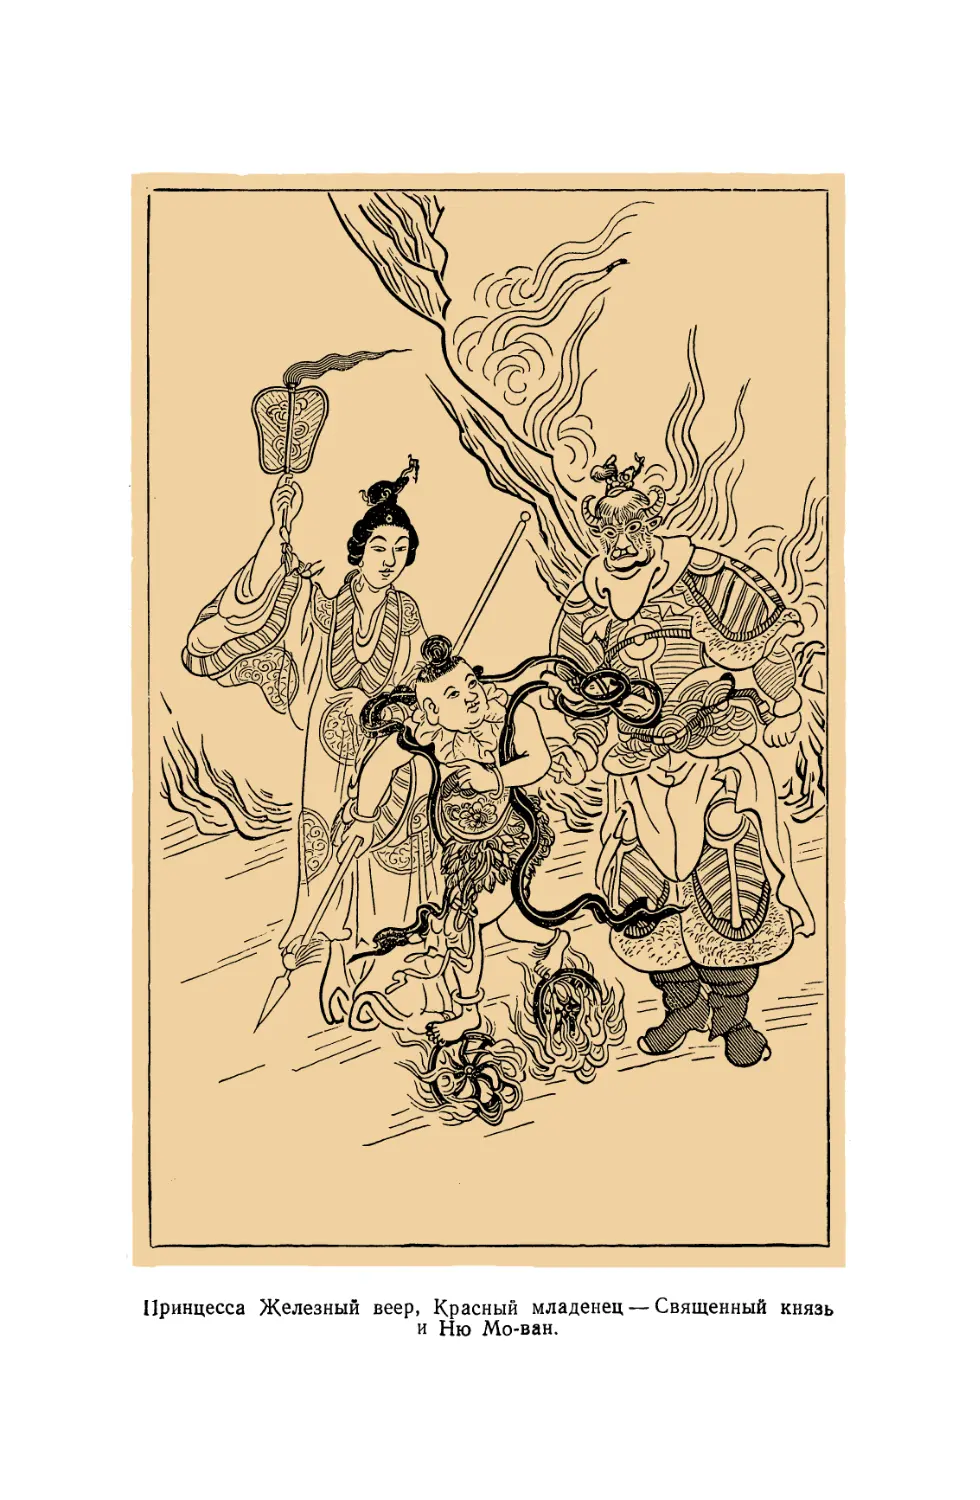 Вклейка. Принцесса Железный веер, Красный младенец — Священный князь и Ню Мо-ван